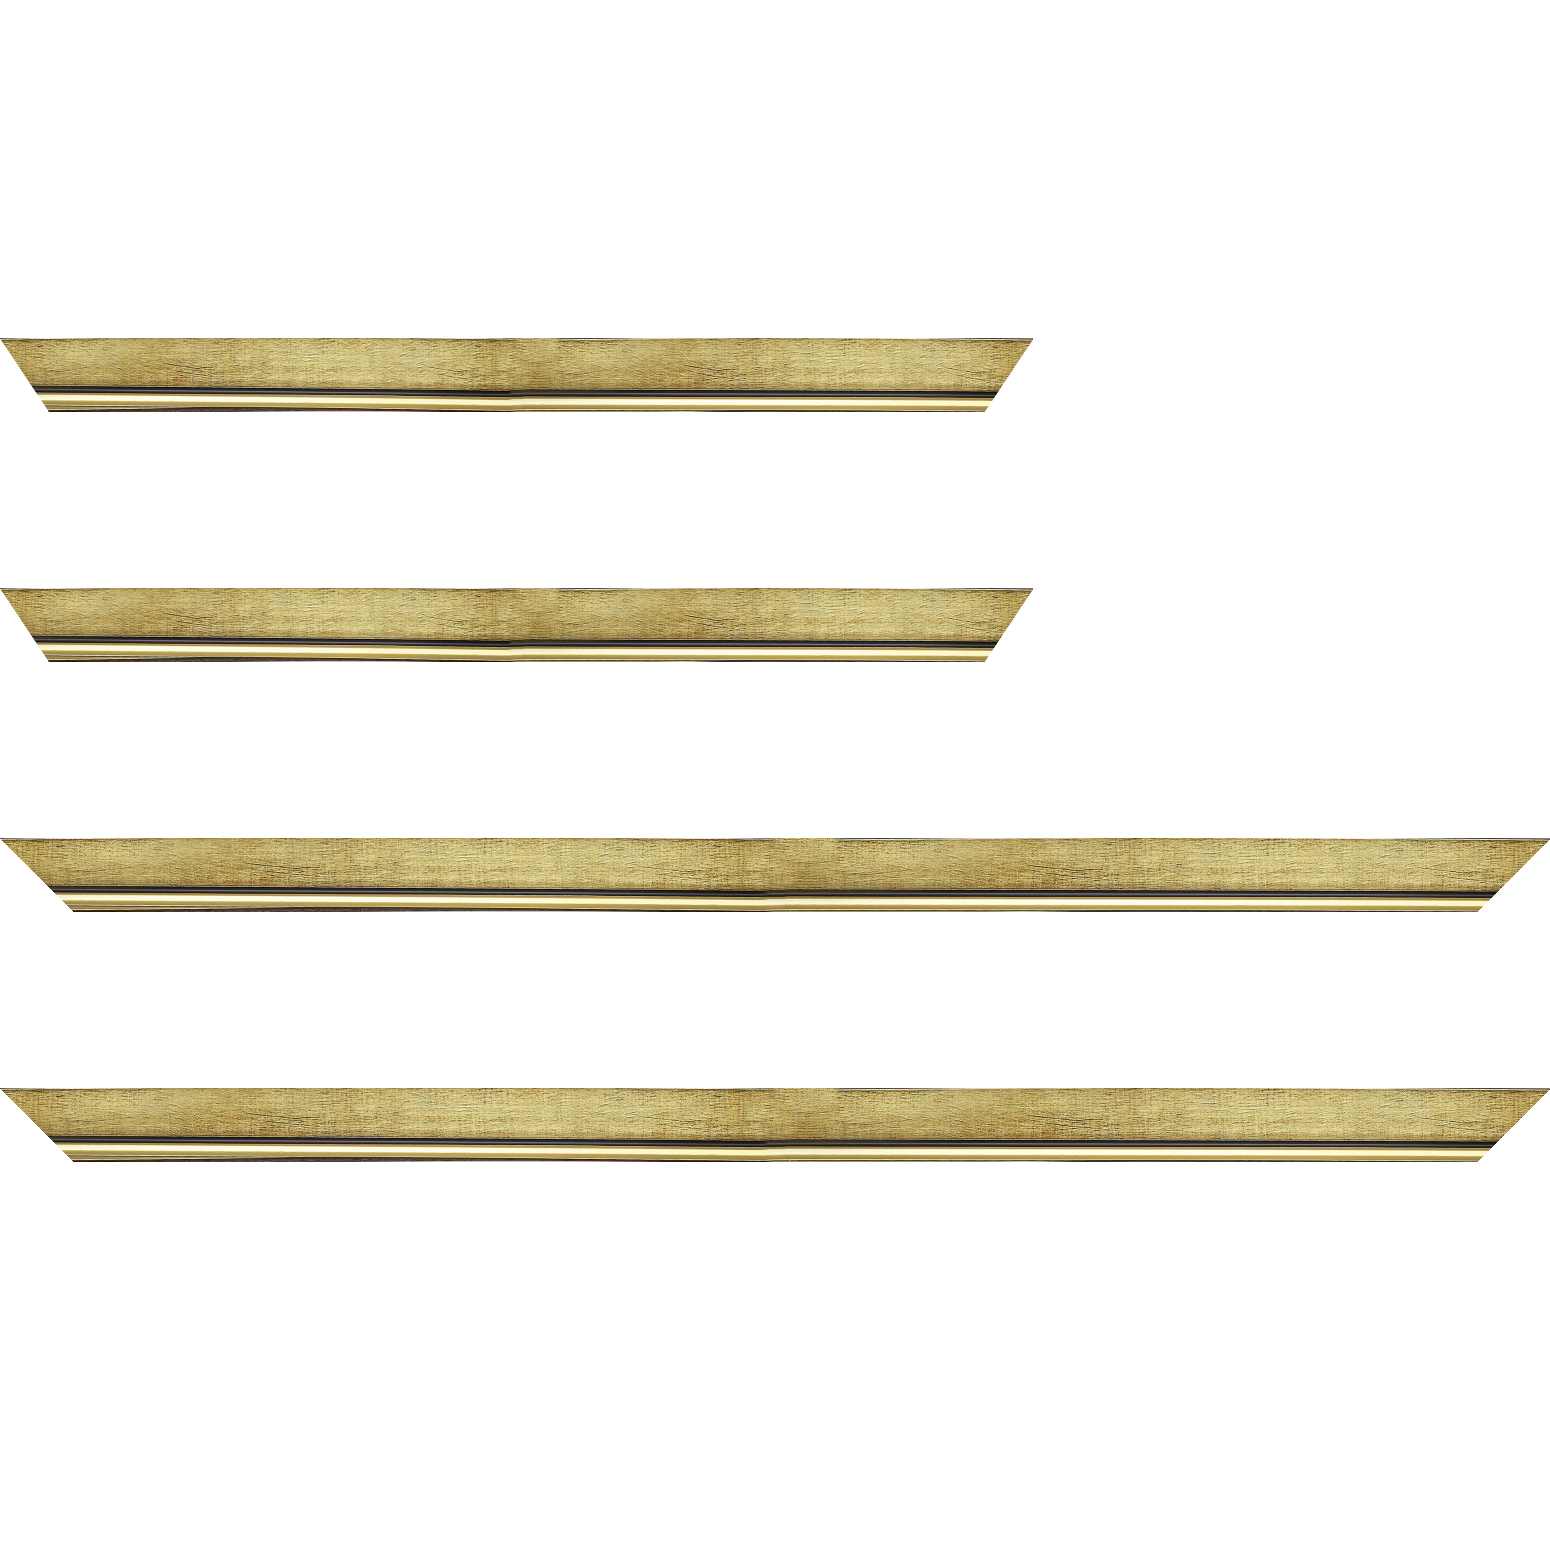 Baguette bois profil plat largeur 2.5cm couleur or filet or surligné noir - 70x100